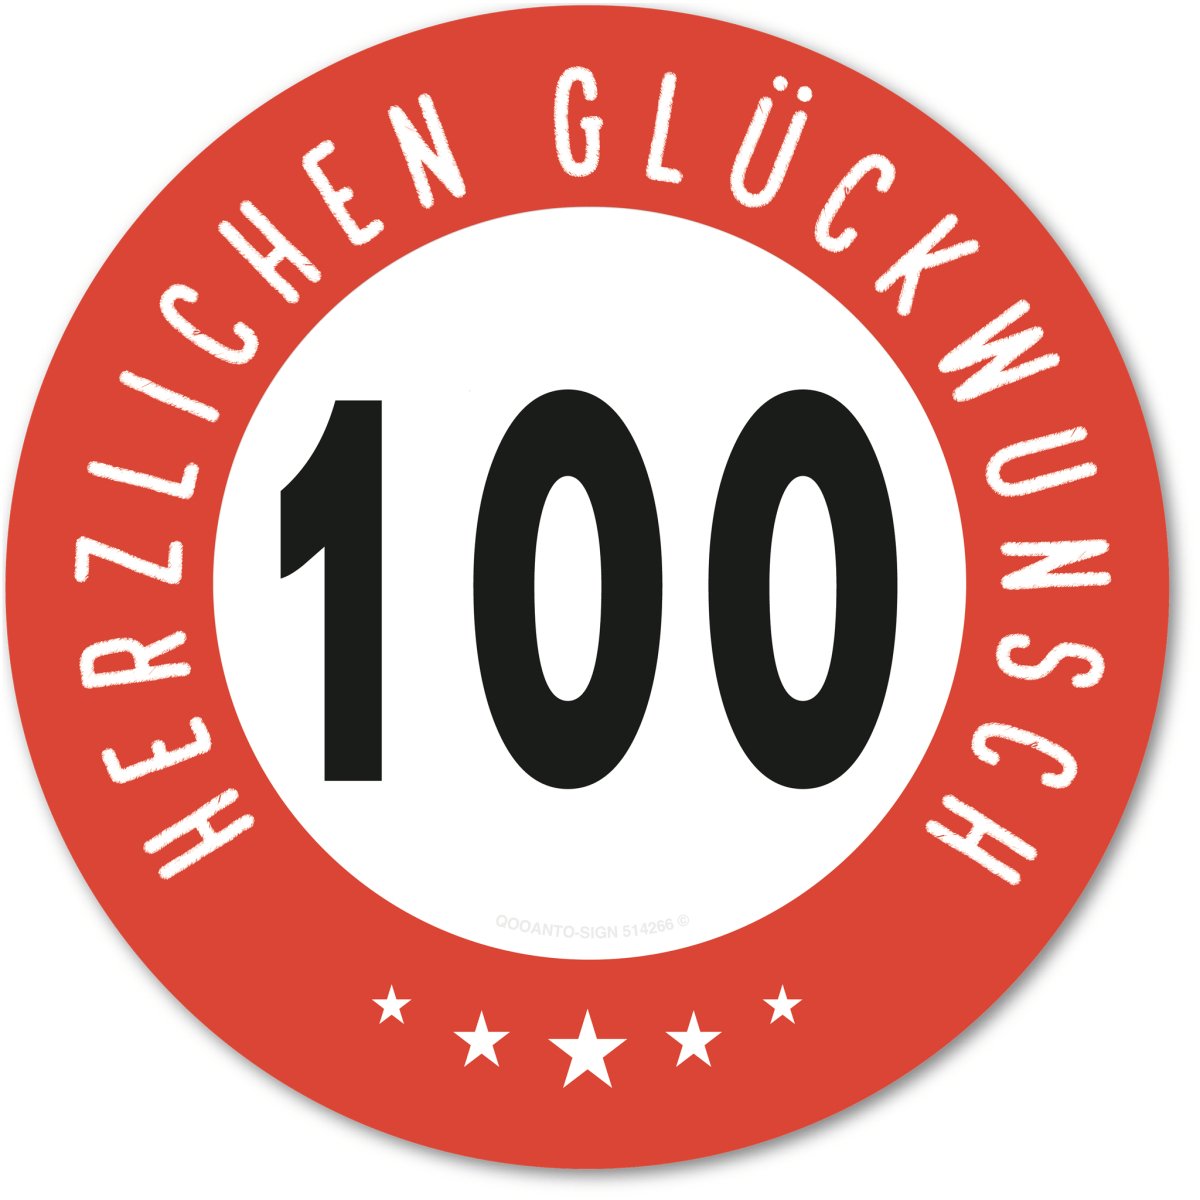 100 Geburtstagsschild mit Text "Herzlichen Glüchwunsch" aus Alu-Verbund mit UV-Schutz - QOOANTO-SIGN